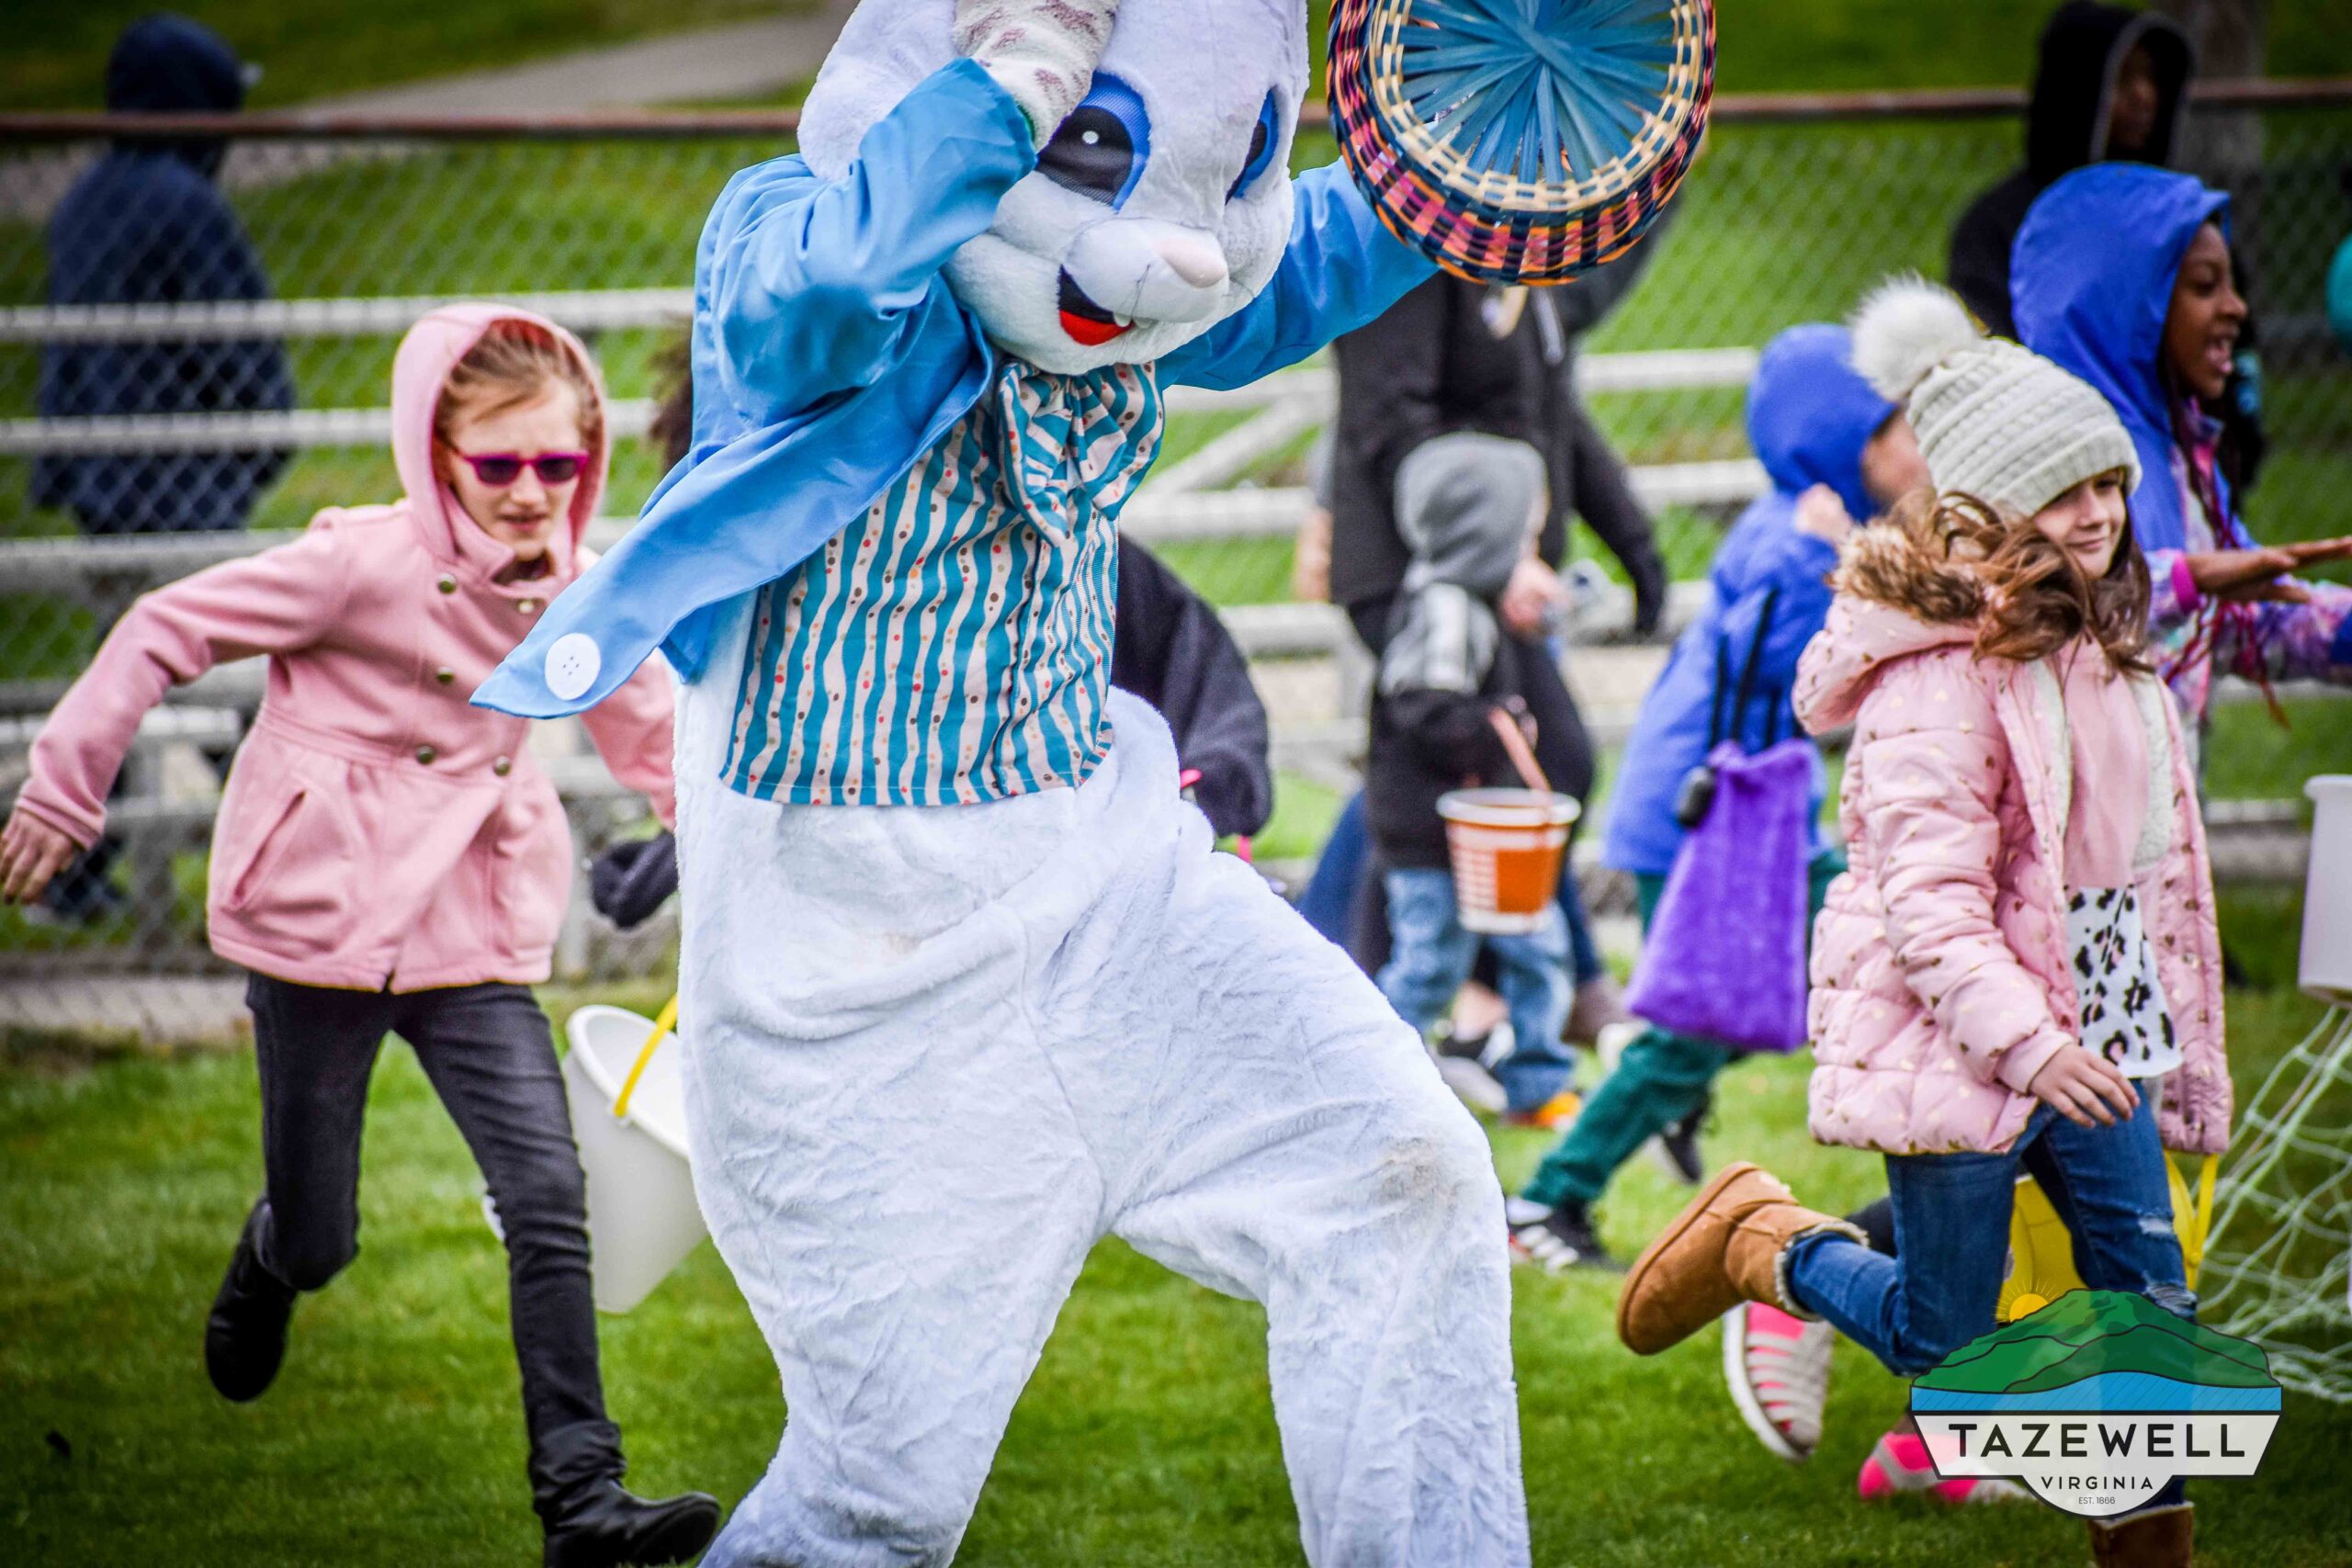 Easter Egg Hunt held at Lincolnshire Park on April 8